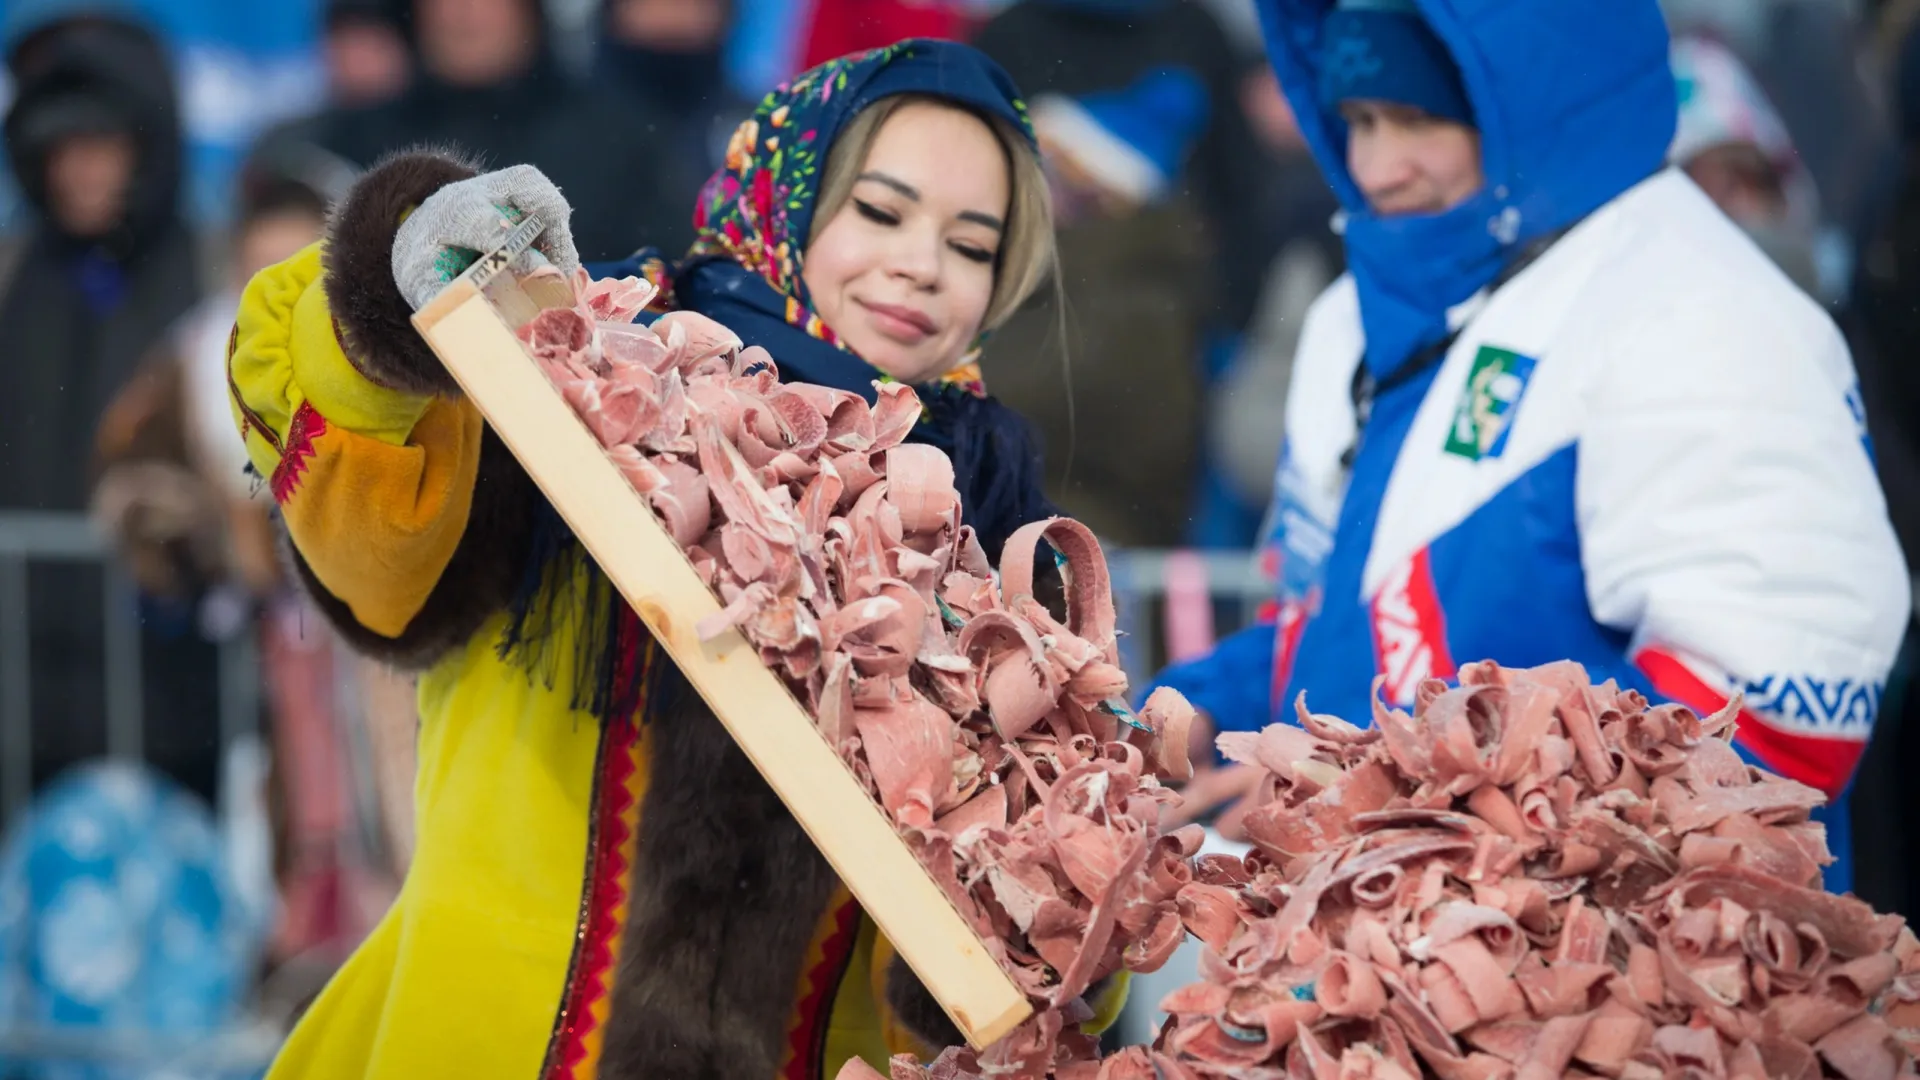 В Аксарке зафиксировали рекорд: 154 кг строганины из оленьего мяса. Фото: Владимир Кузнецов / «Ямал-Медиа»